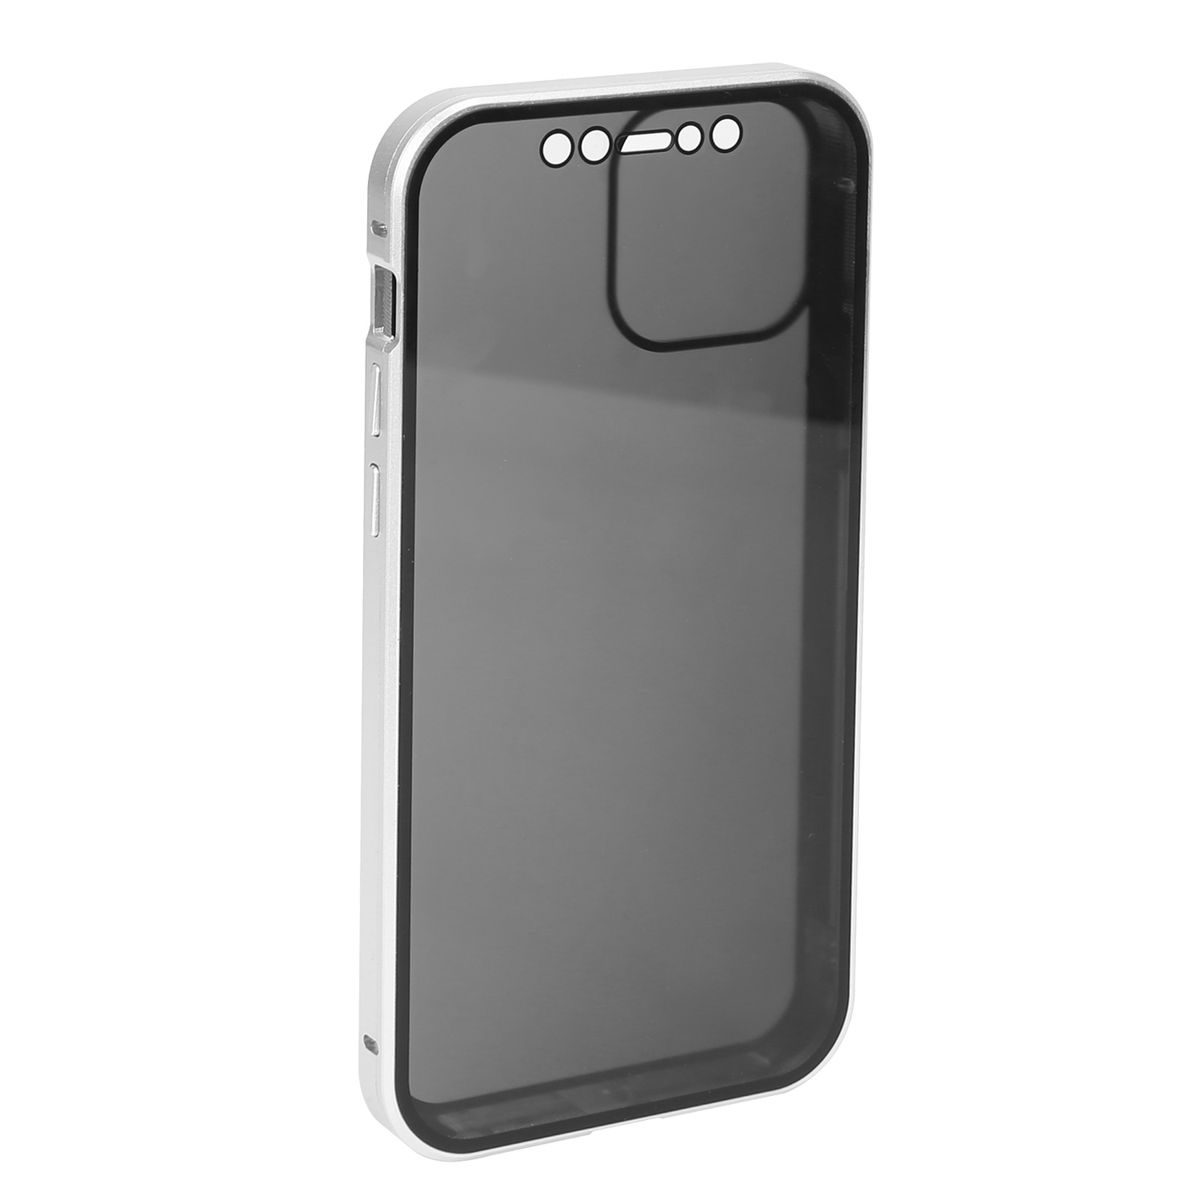 Photos - Case iMounTEK iMounTEK® Privacy iPhone  - iPhone 12 Pro Max - Silver PACASE